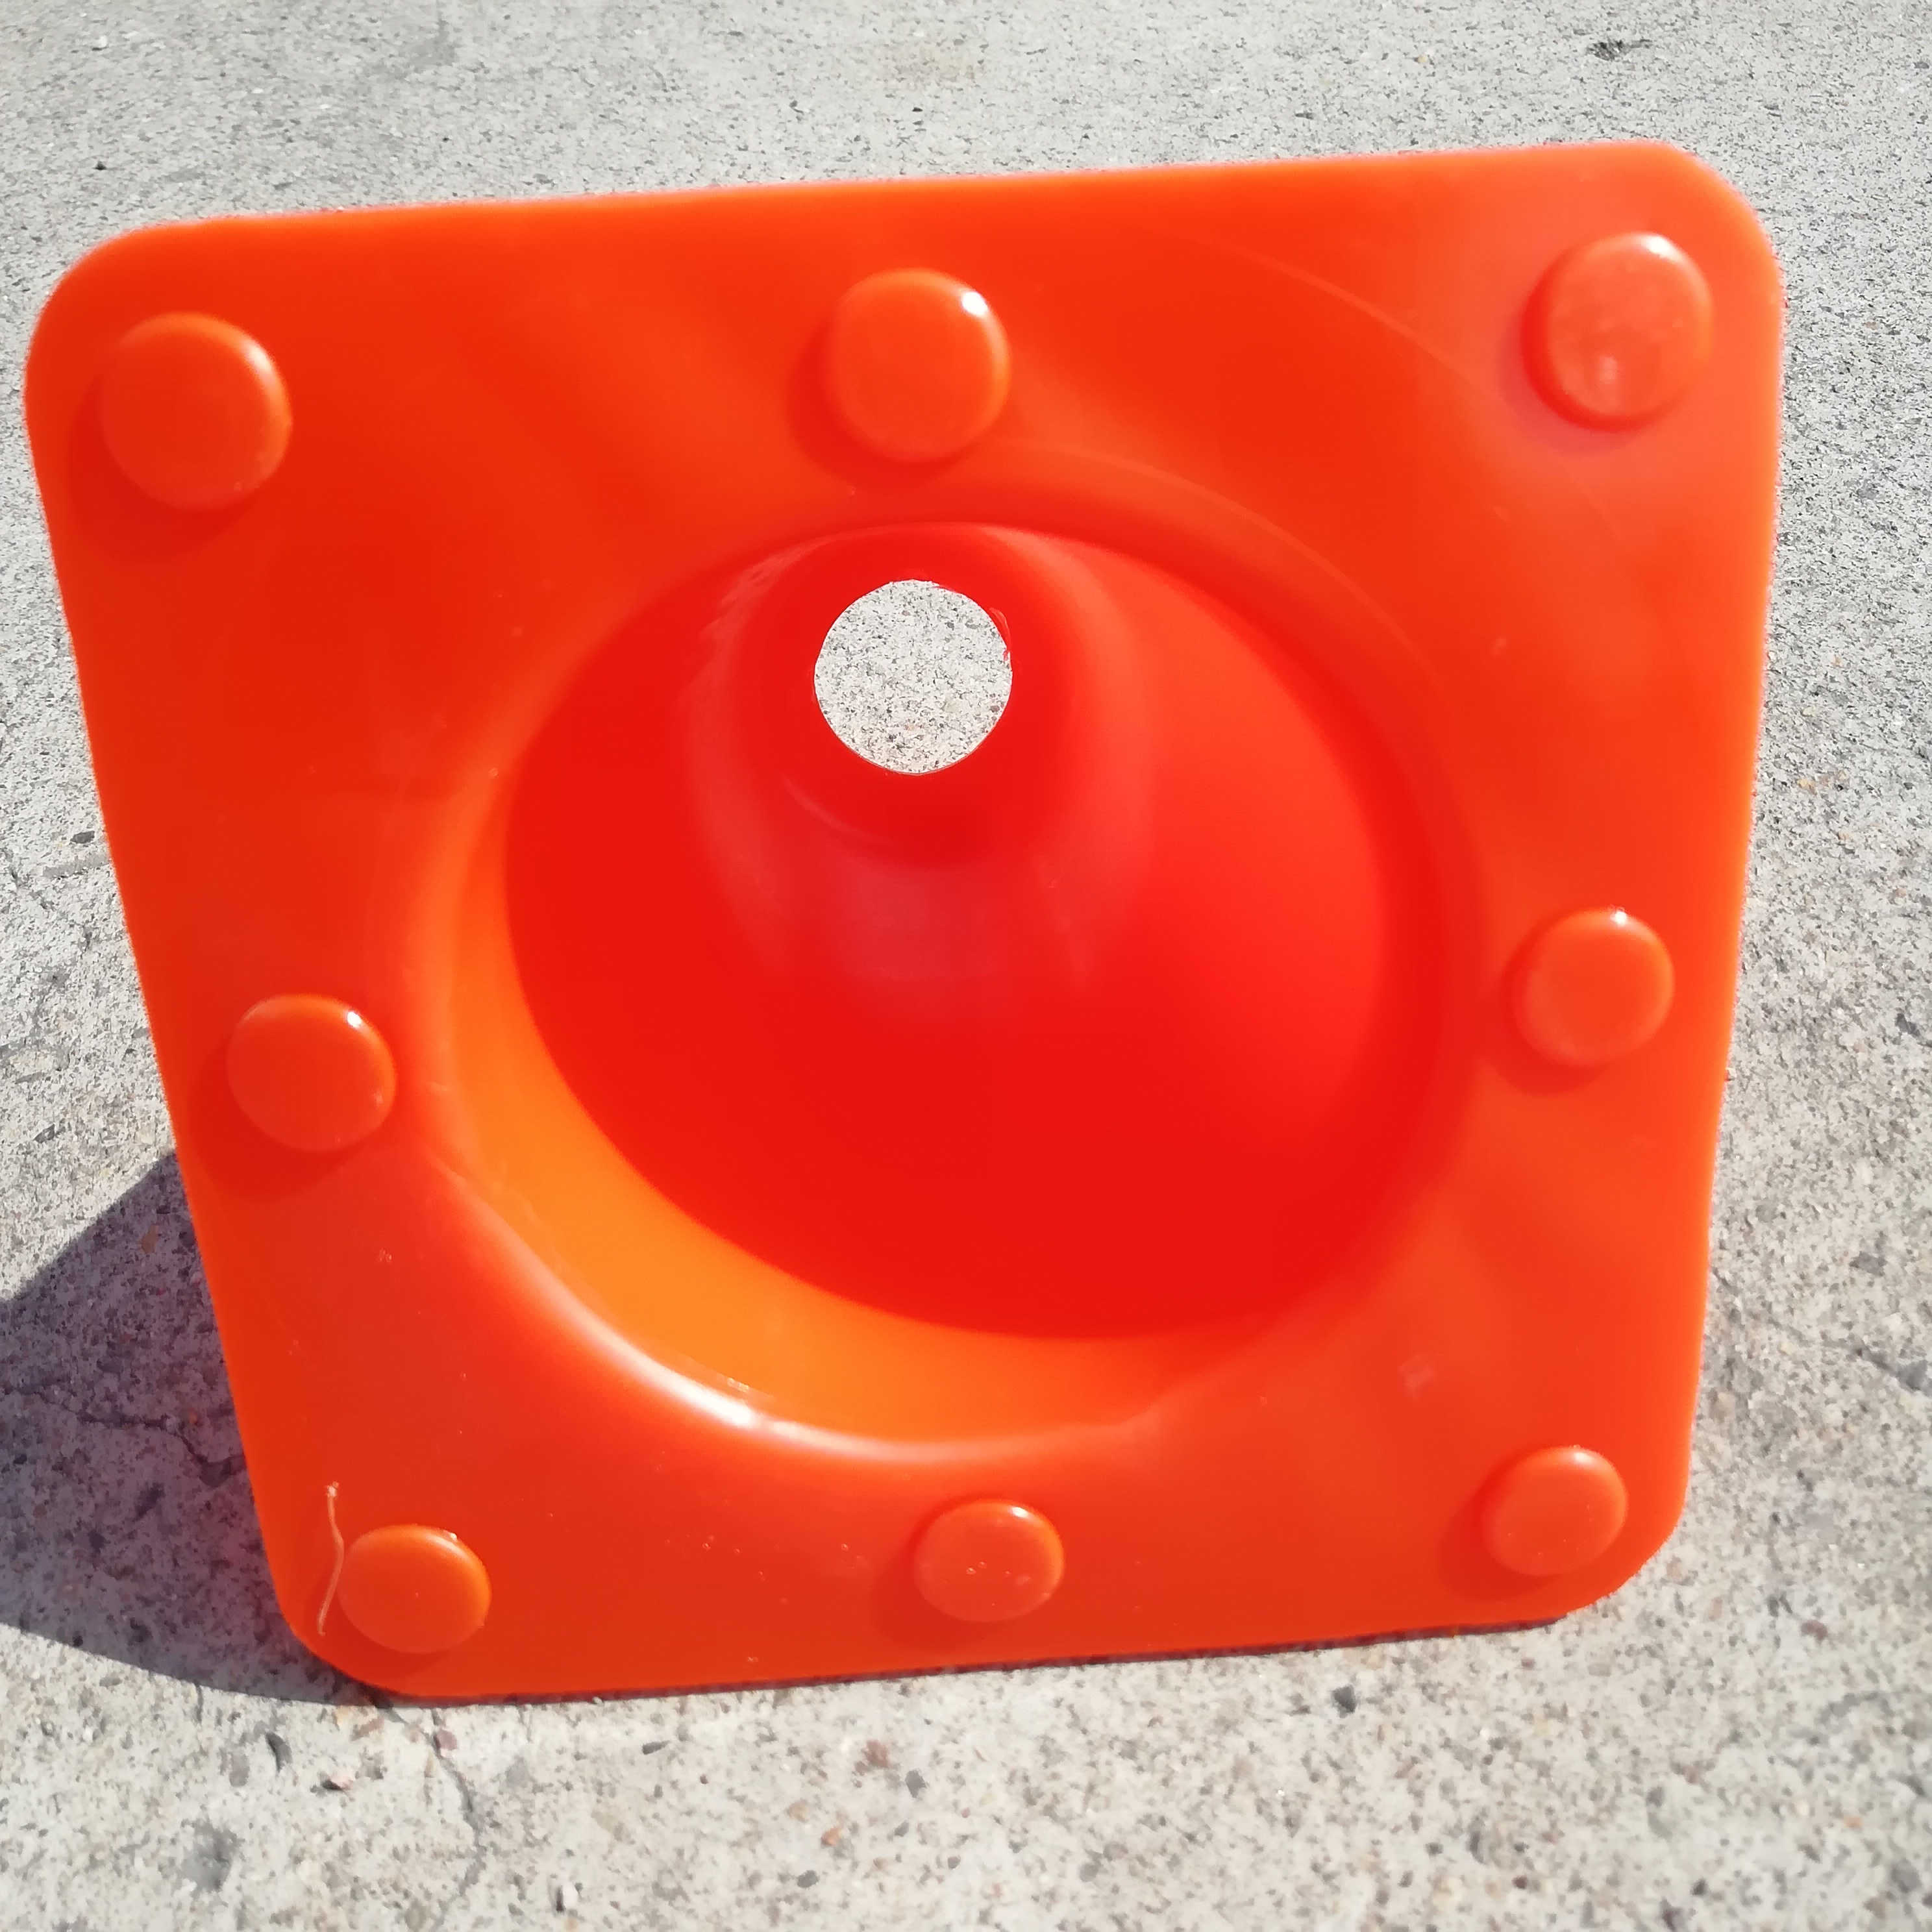 15cm 0.26 kg All Orange PVC Cone